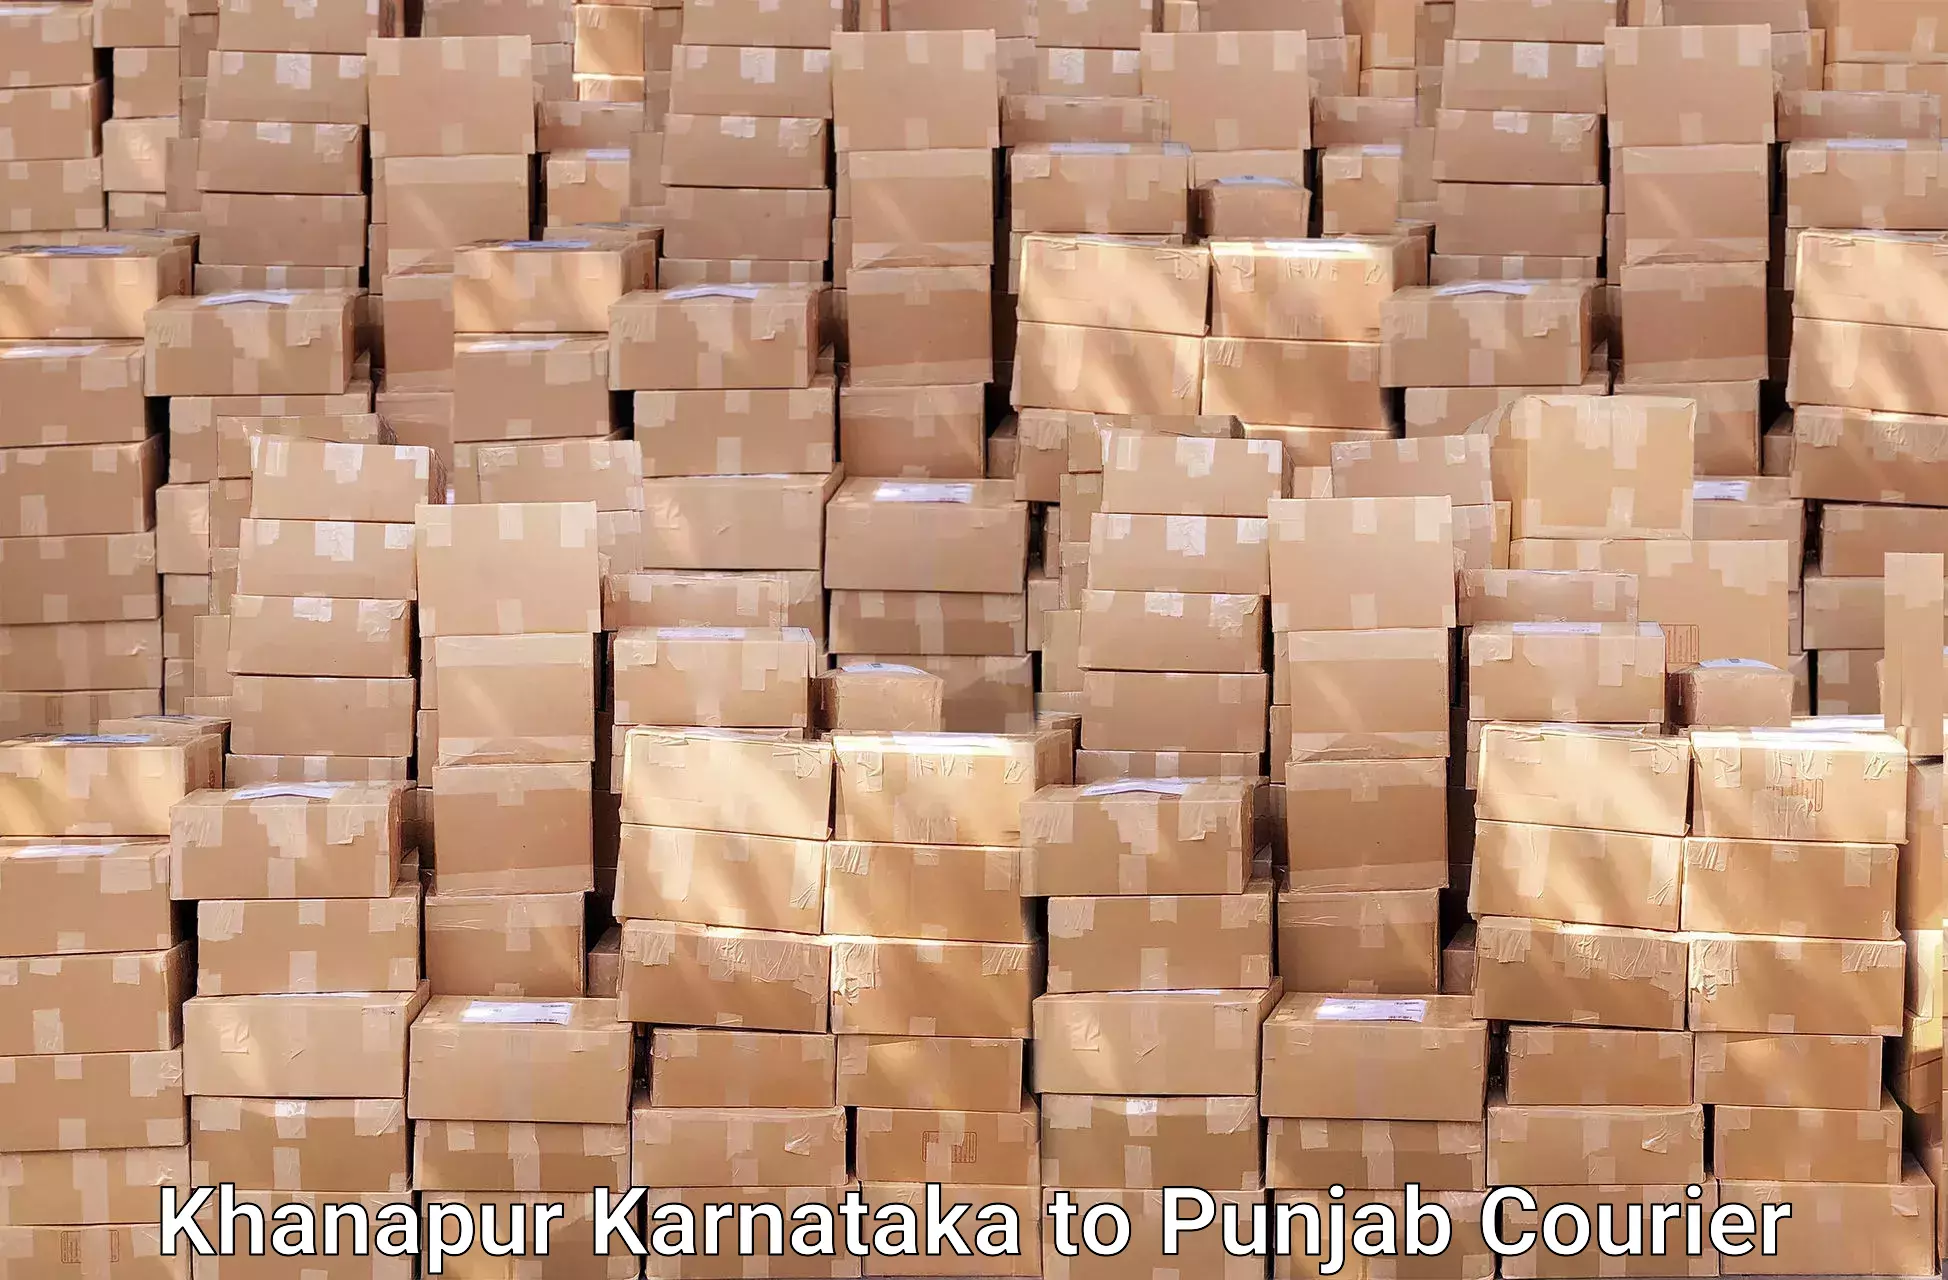 Efficient moving strategies Khanapur Karnataka to Punjab